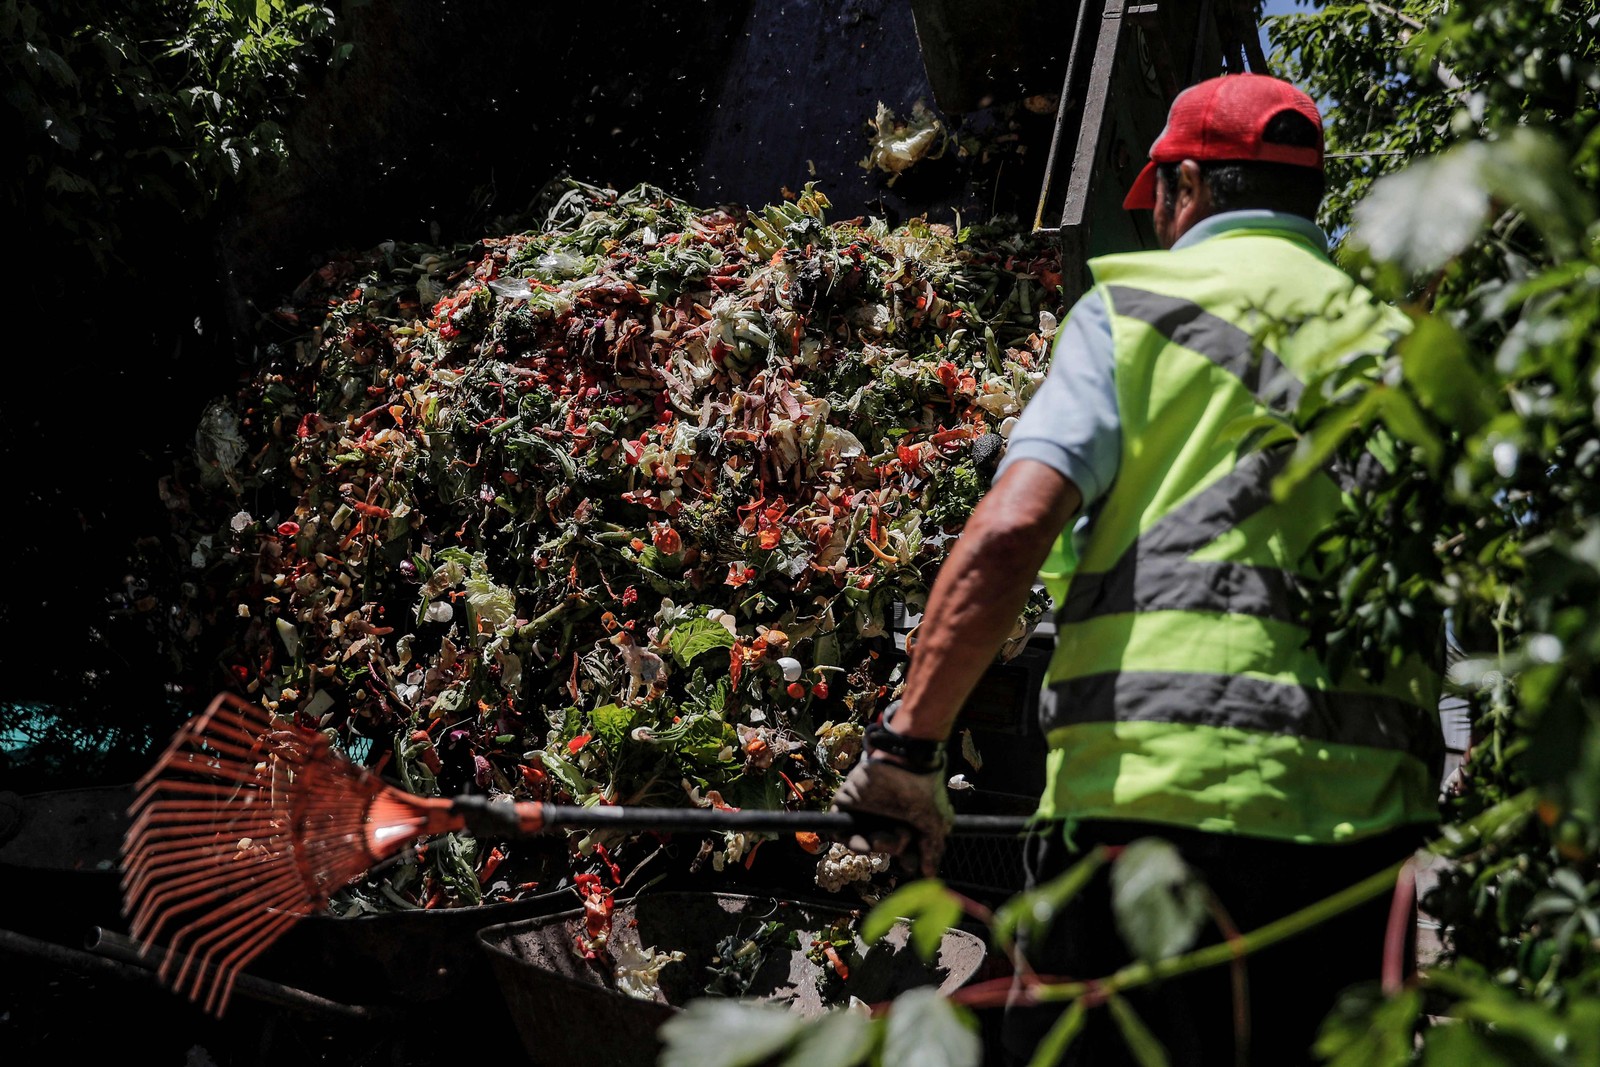 Graças a este projeto, La Pintana recicla cerca de 20 toneladas por dia e economiza cerca de 100 mil dólares por ano — Foto: JAVIER TORRES / AFP